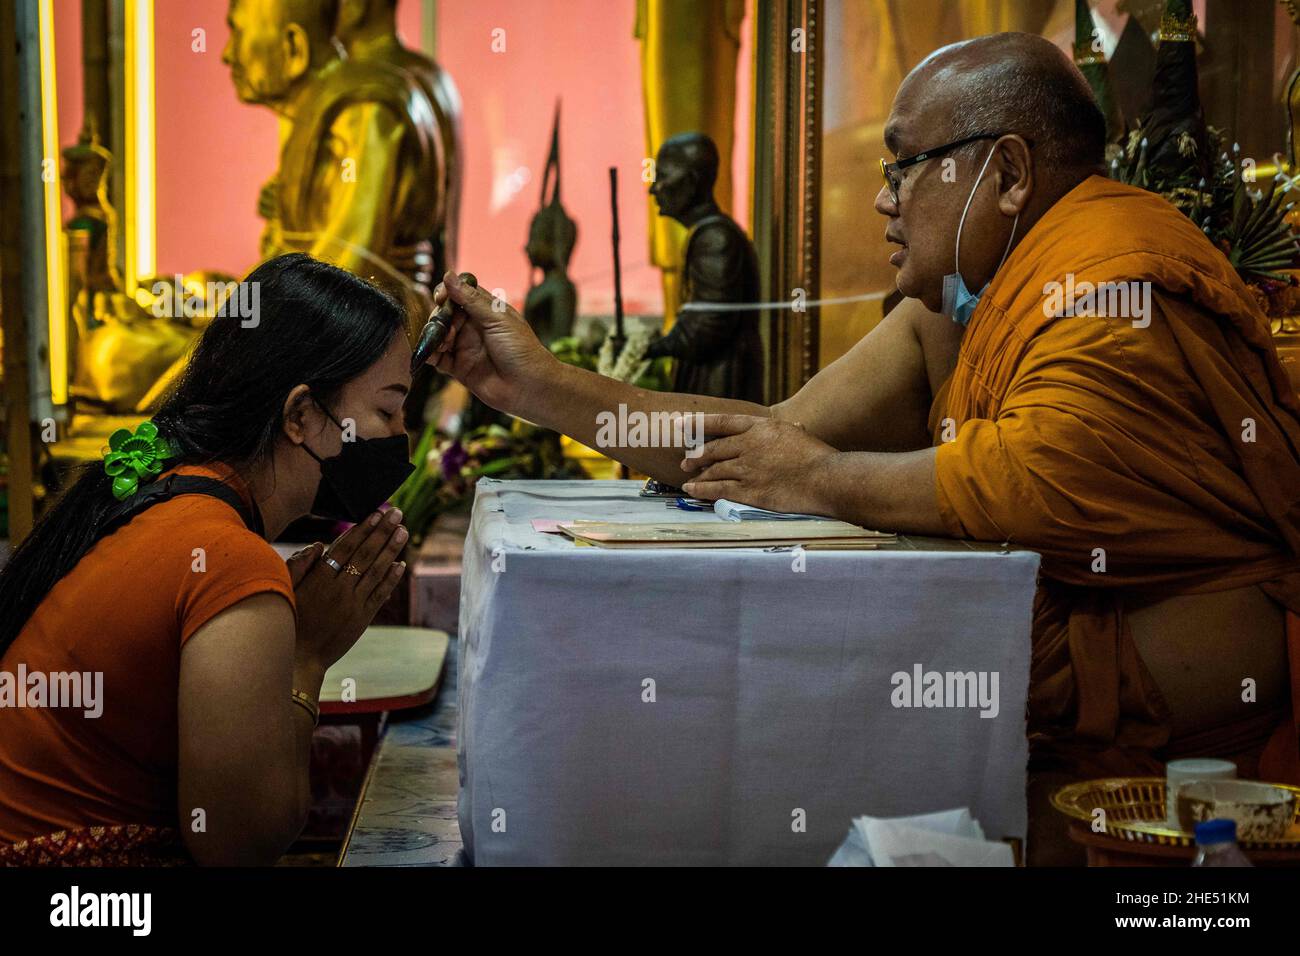 Bangkok, Thaïlande.1st janvier 2022.Un moine prie avec un dévot thaïlandais avant de prendre part au rituel de résurrection au temple.les dévotés sont ressuscités dans un rituel annuel du nouvel an à Wat Takien près de Nonthaburi.Ce rite commence par une prière suivie par les participants qui chantent avec des fils saints enveloppés autour de leur tête avant de s'allonger dans un cercueil à « mort » et d'être nettoyés.(Image de crédit : © Matt Hunt/SOPA Images via ZUMA Press Wire) Banque D'Images